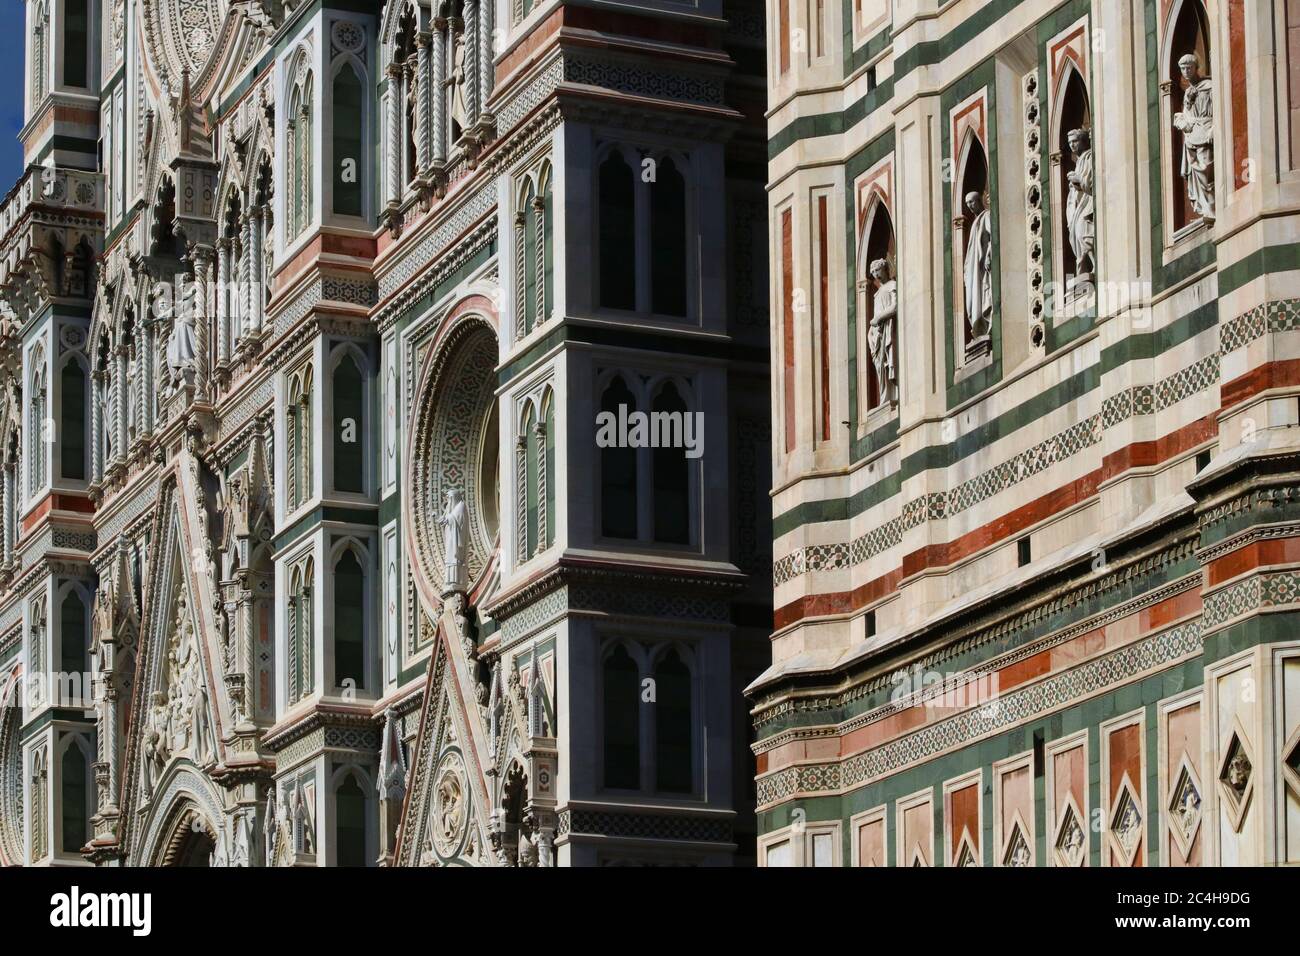 Santa Maria in Fiore cattedrale di Firenze, dettagli della superficie decorativa con marmi colorati, attrazione turistica Foto Stock